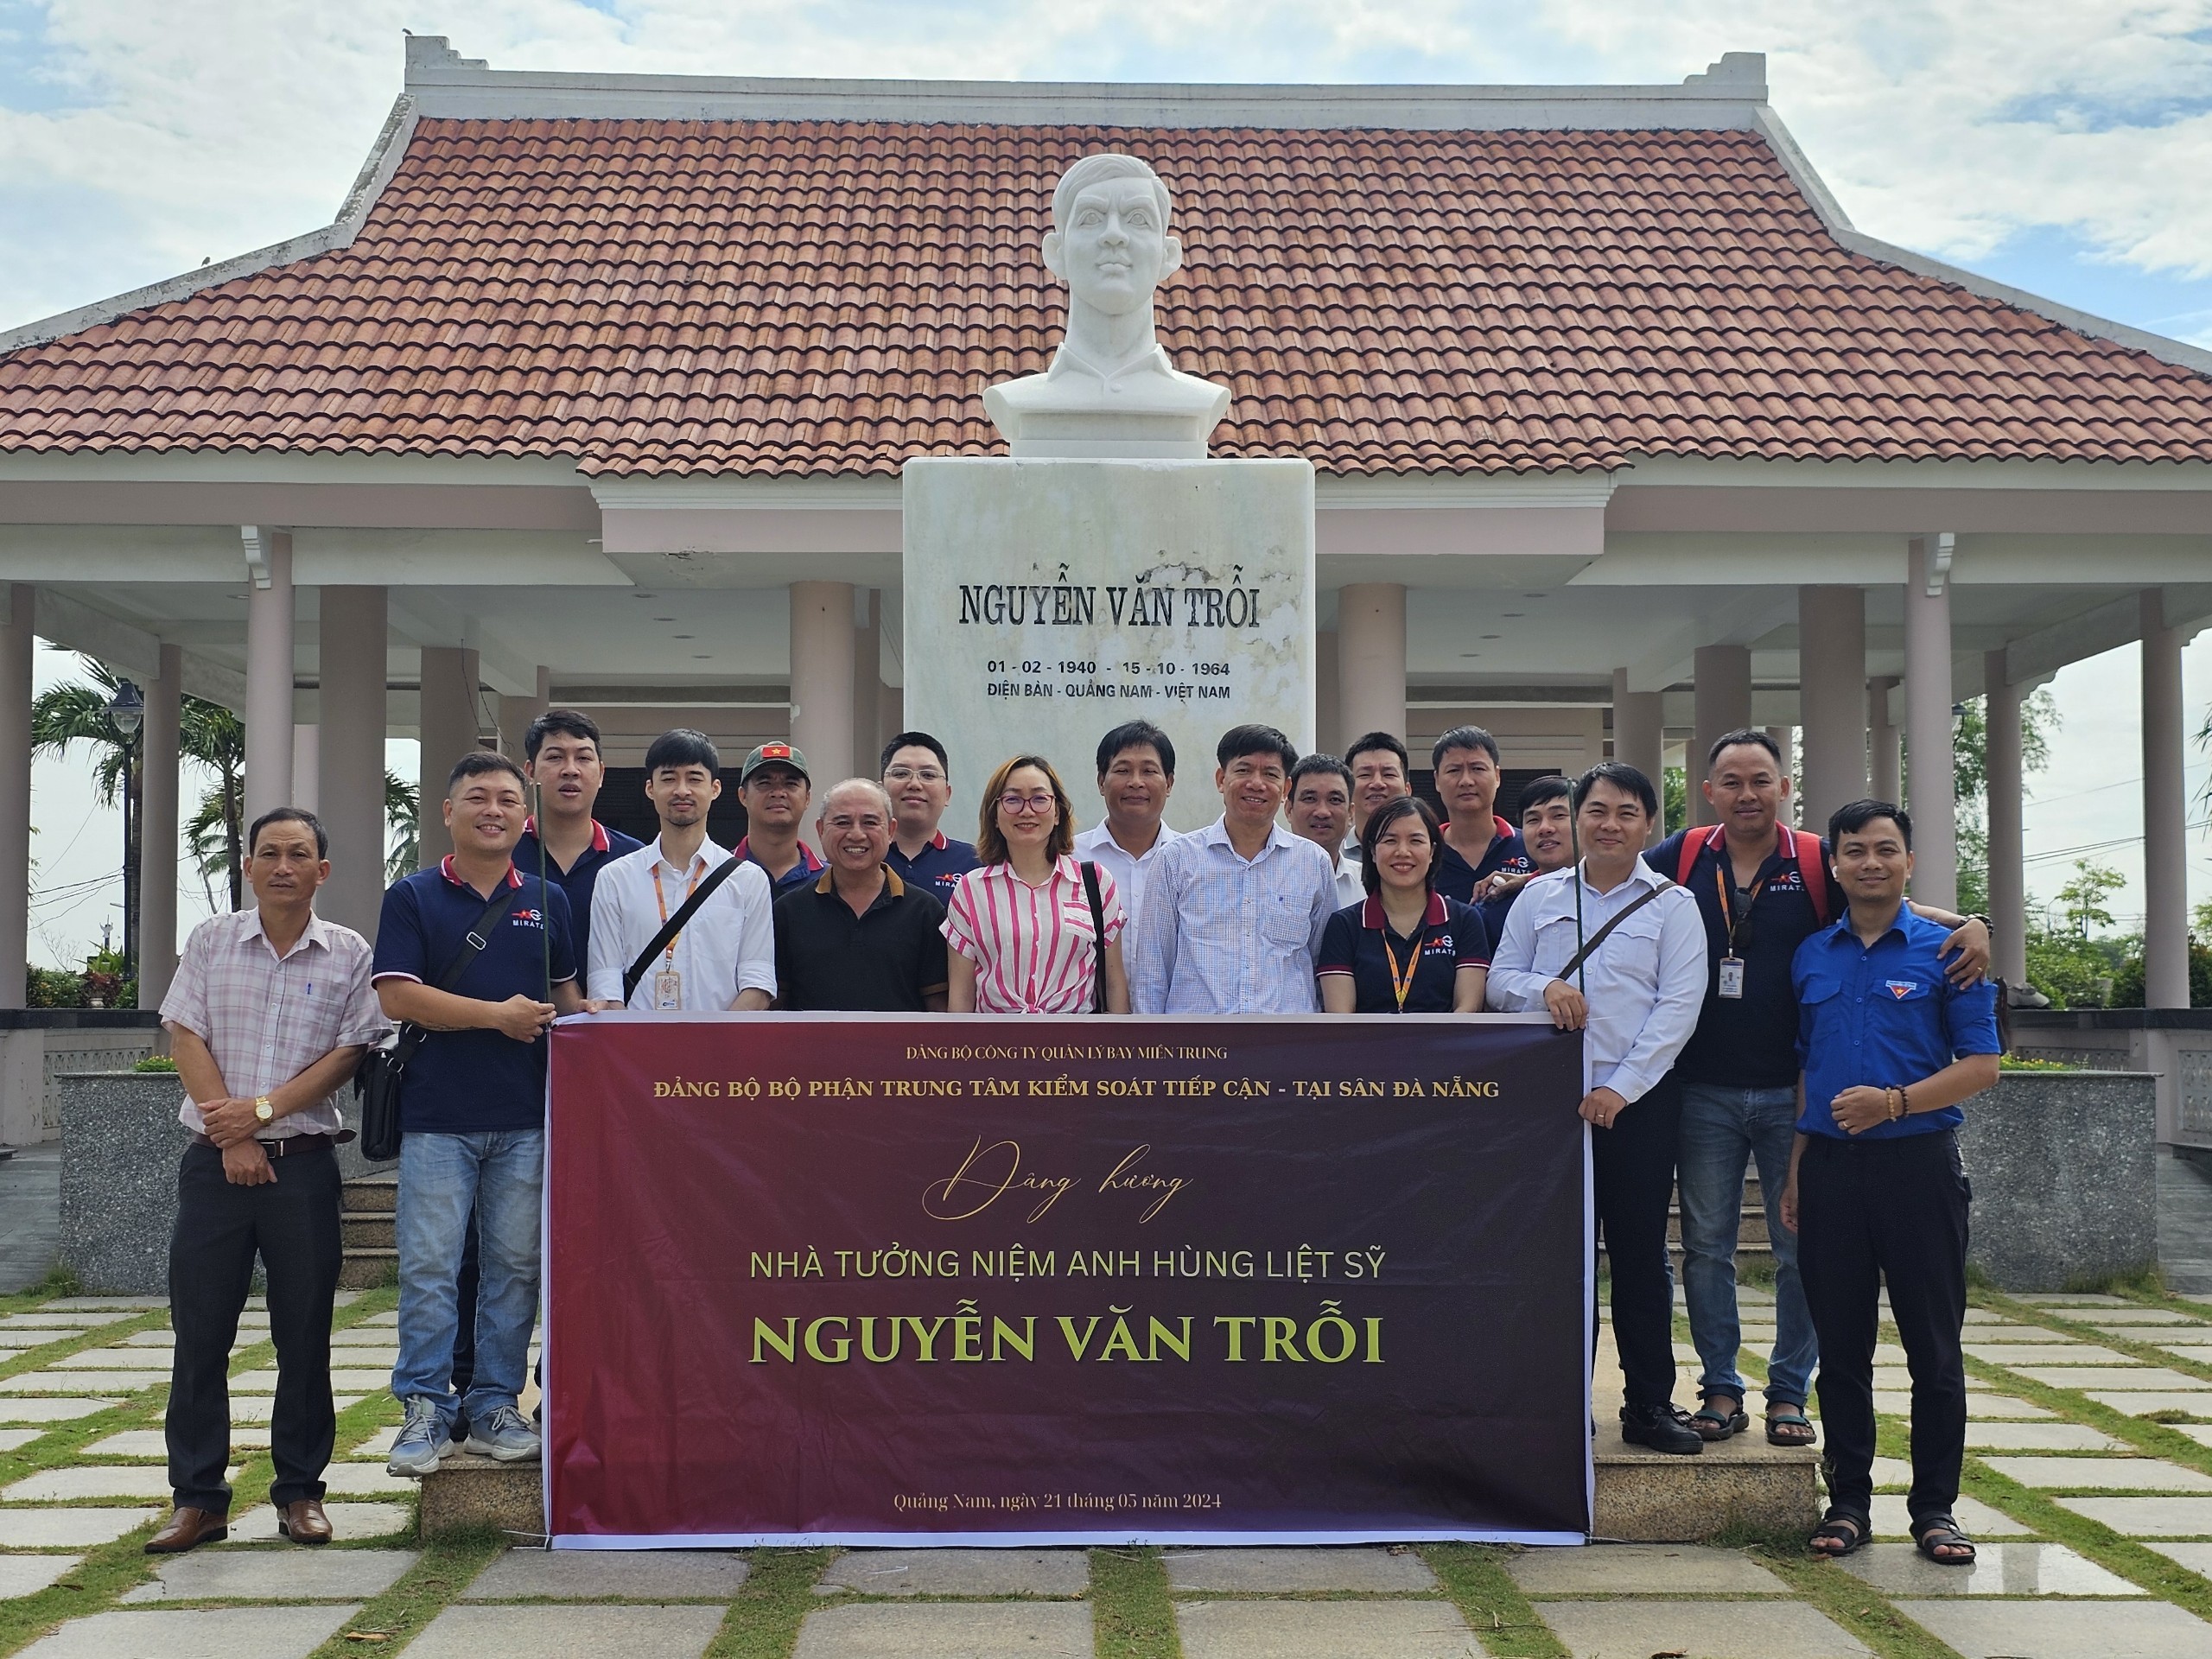 Đảng bộ bộ phận Trung tâm Kiểm soát Tiếp cận - Tại sân Đà Nẵng tổ chức chuyên đề giáo dục truyền thống Cách mạng